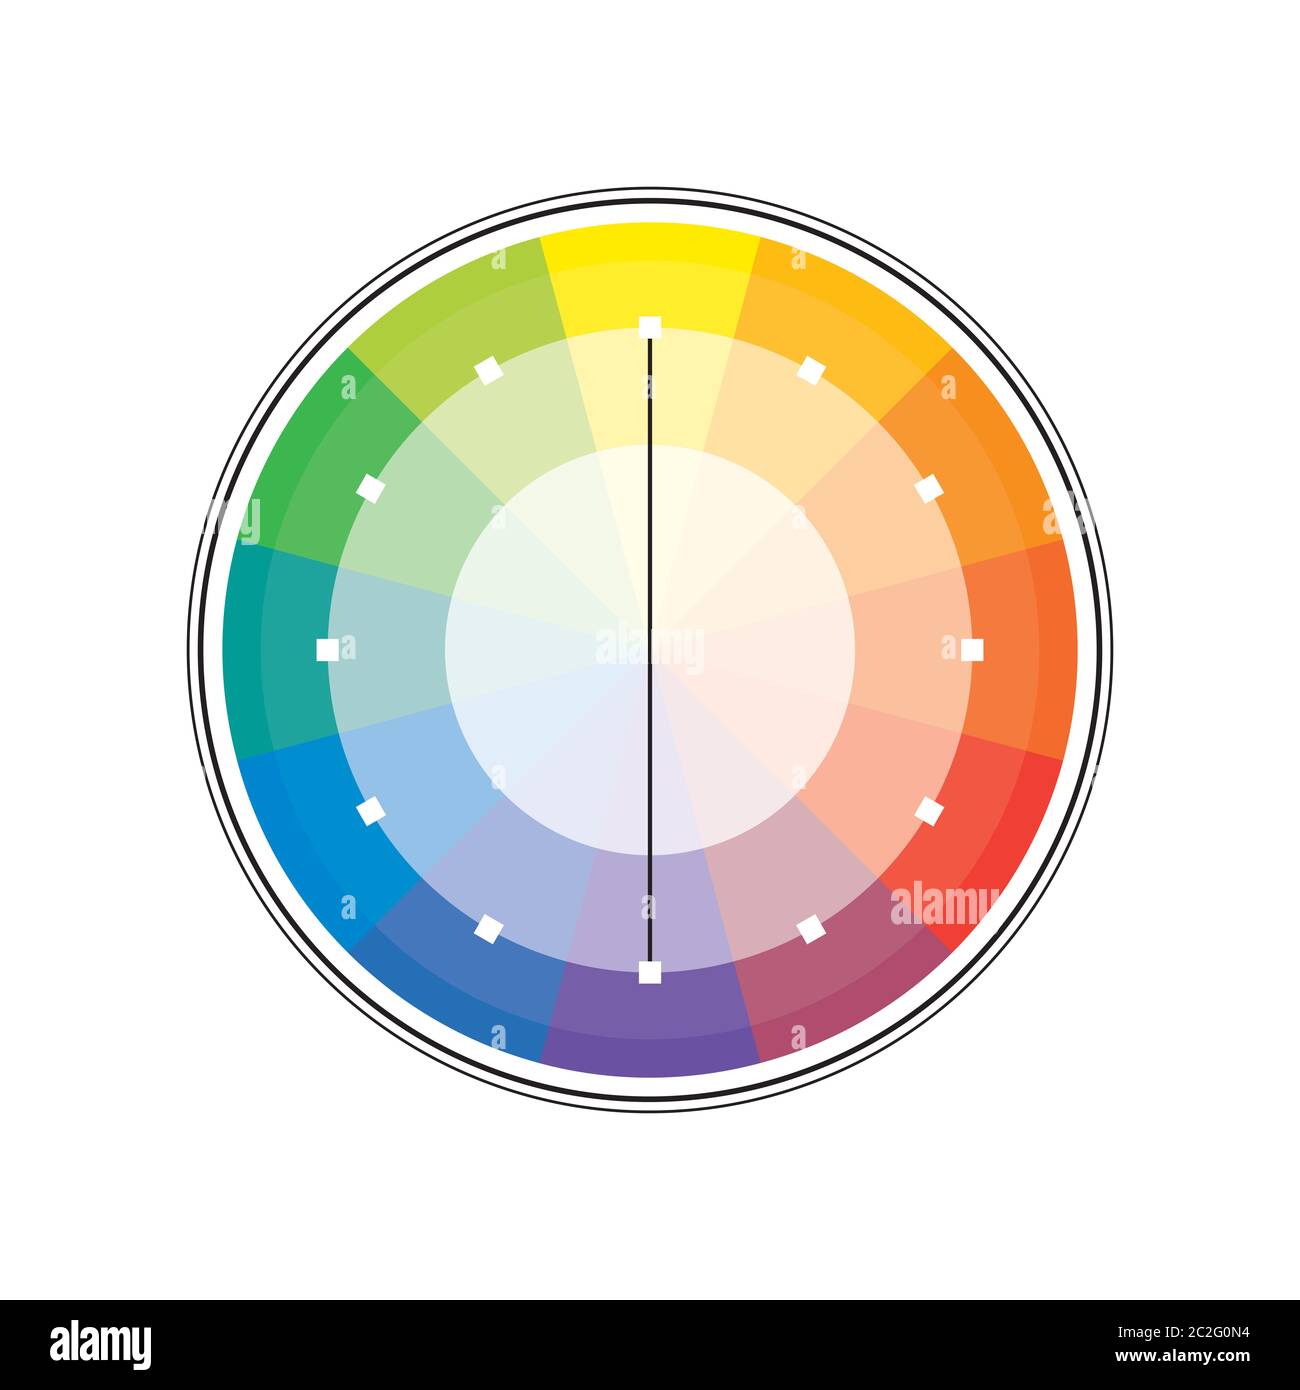 Policrome spettrale multicolore Versicolor Rainbow cerchio di 12 segmenti. L'armonica spettrale colorata tavolozza di pittore. Foto Stock